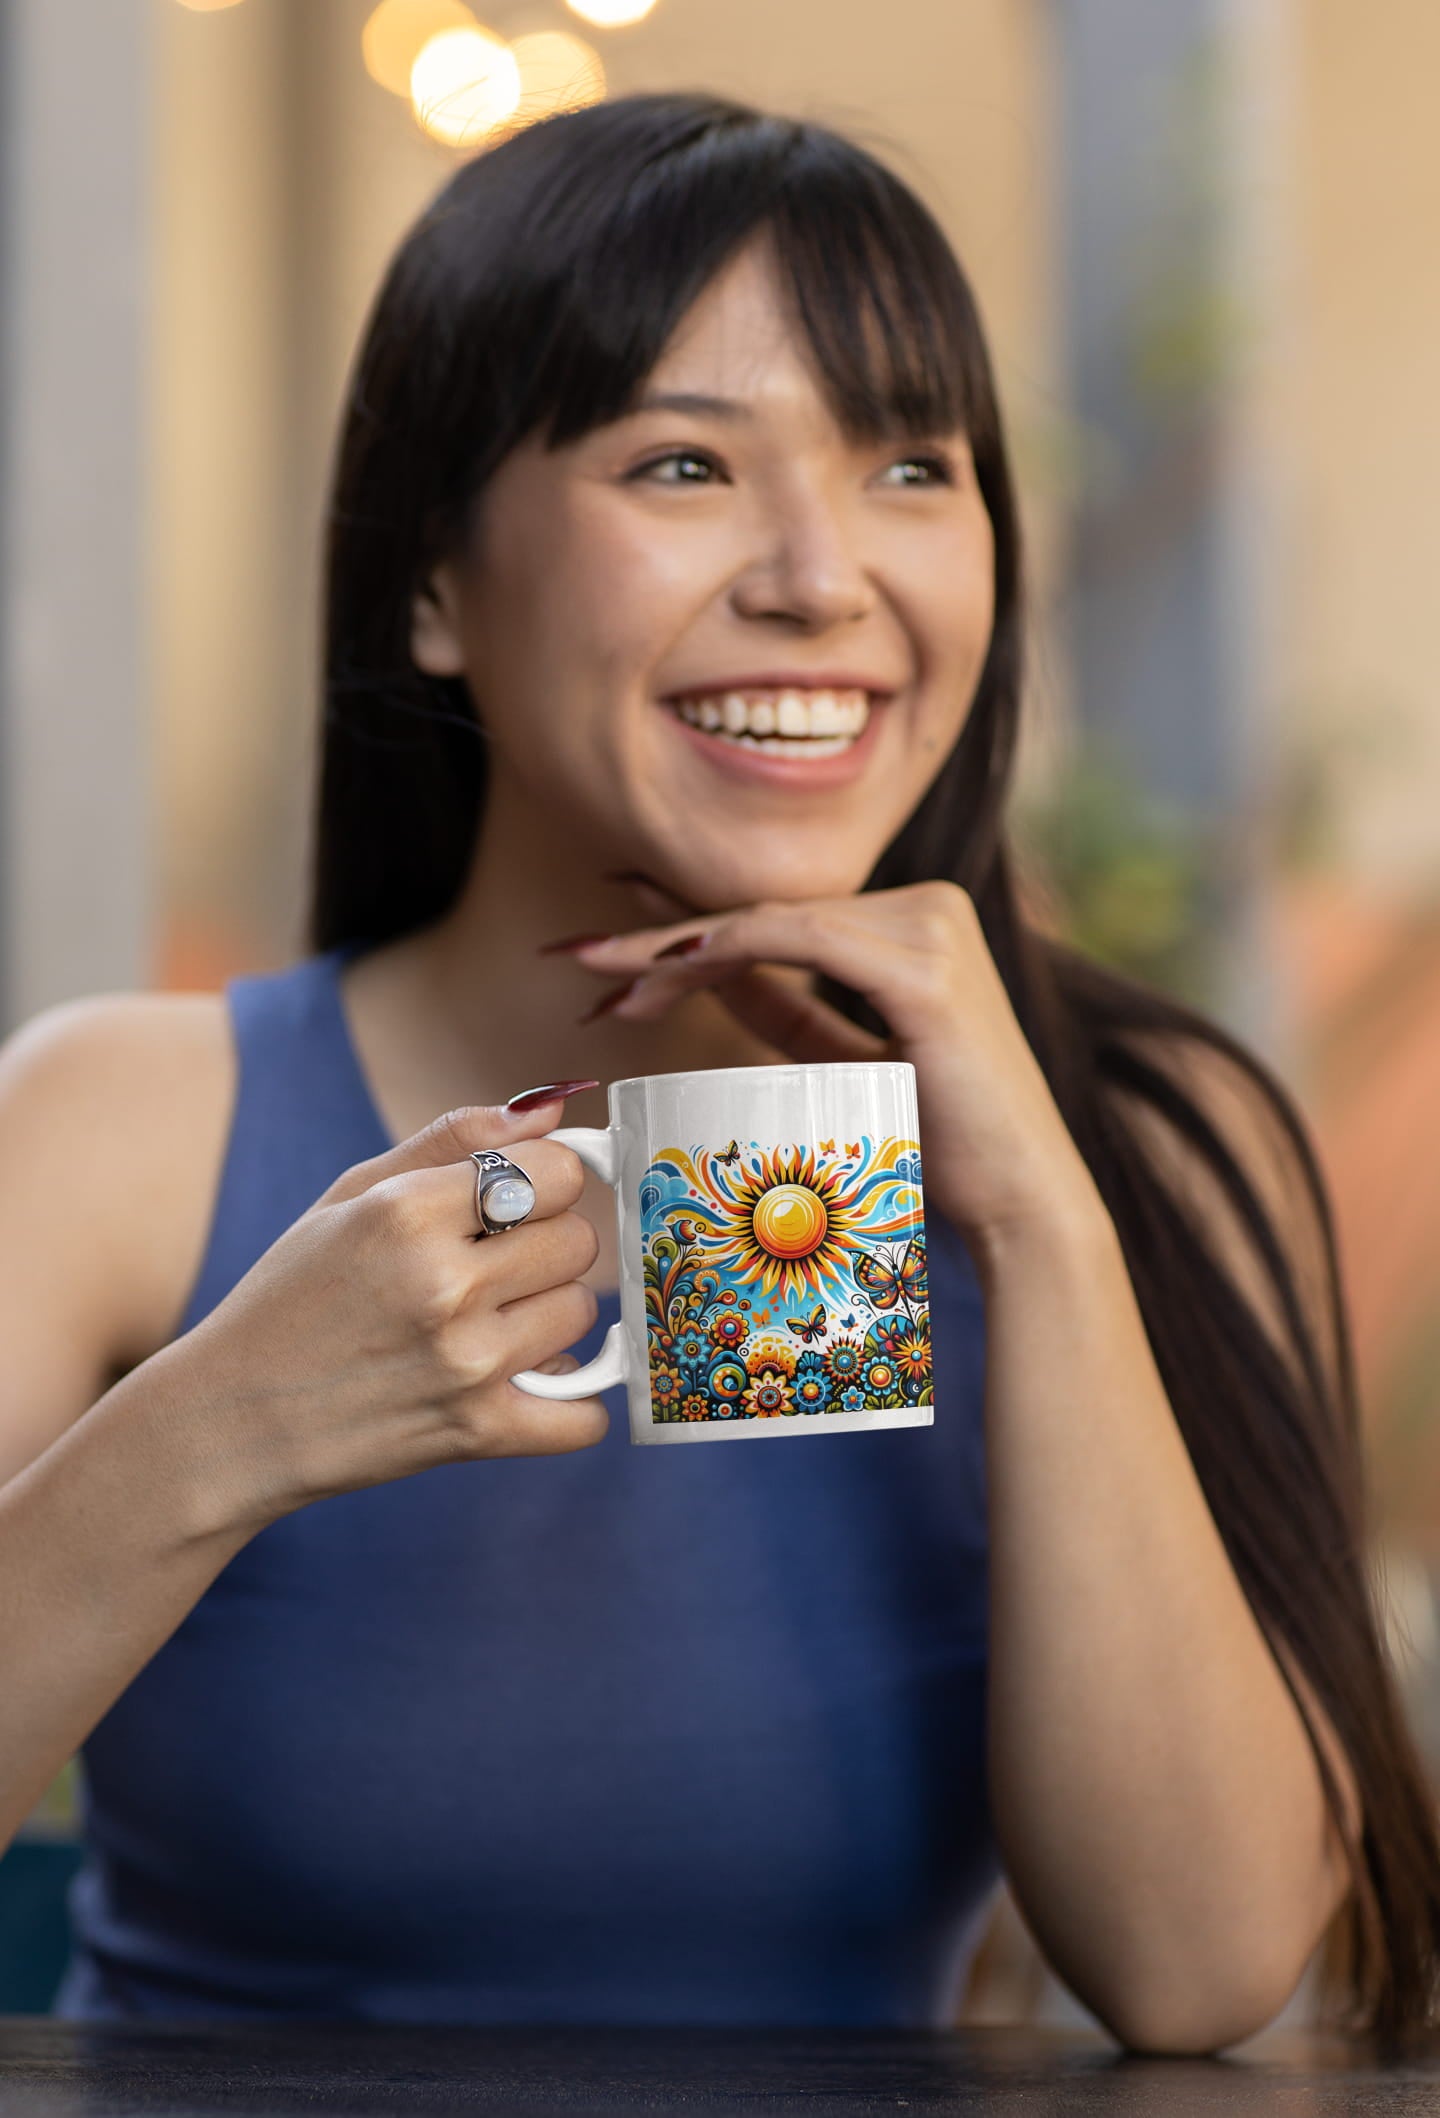 Embrace of the Sun Mug | Energize Your Day with Joy and Light | Ceramic Mug 11oz